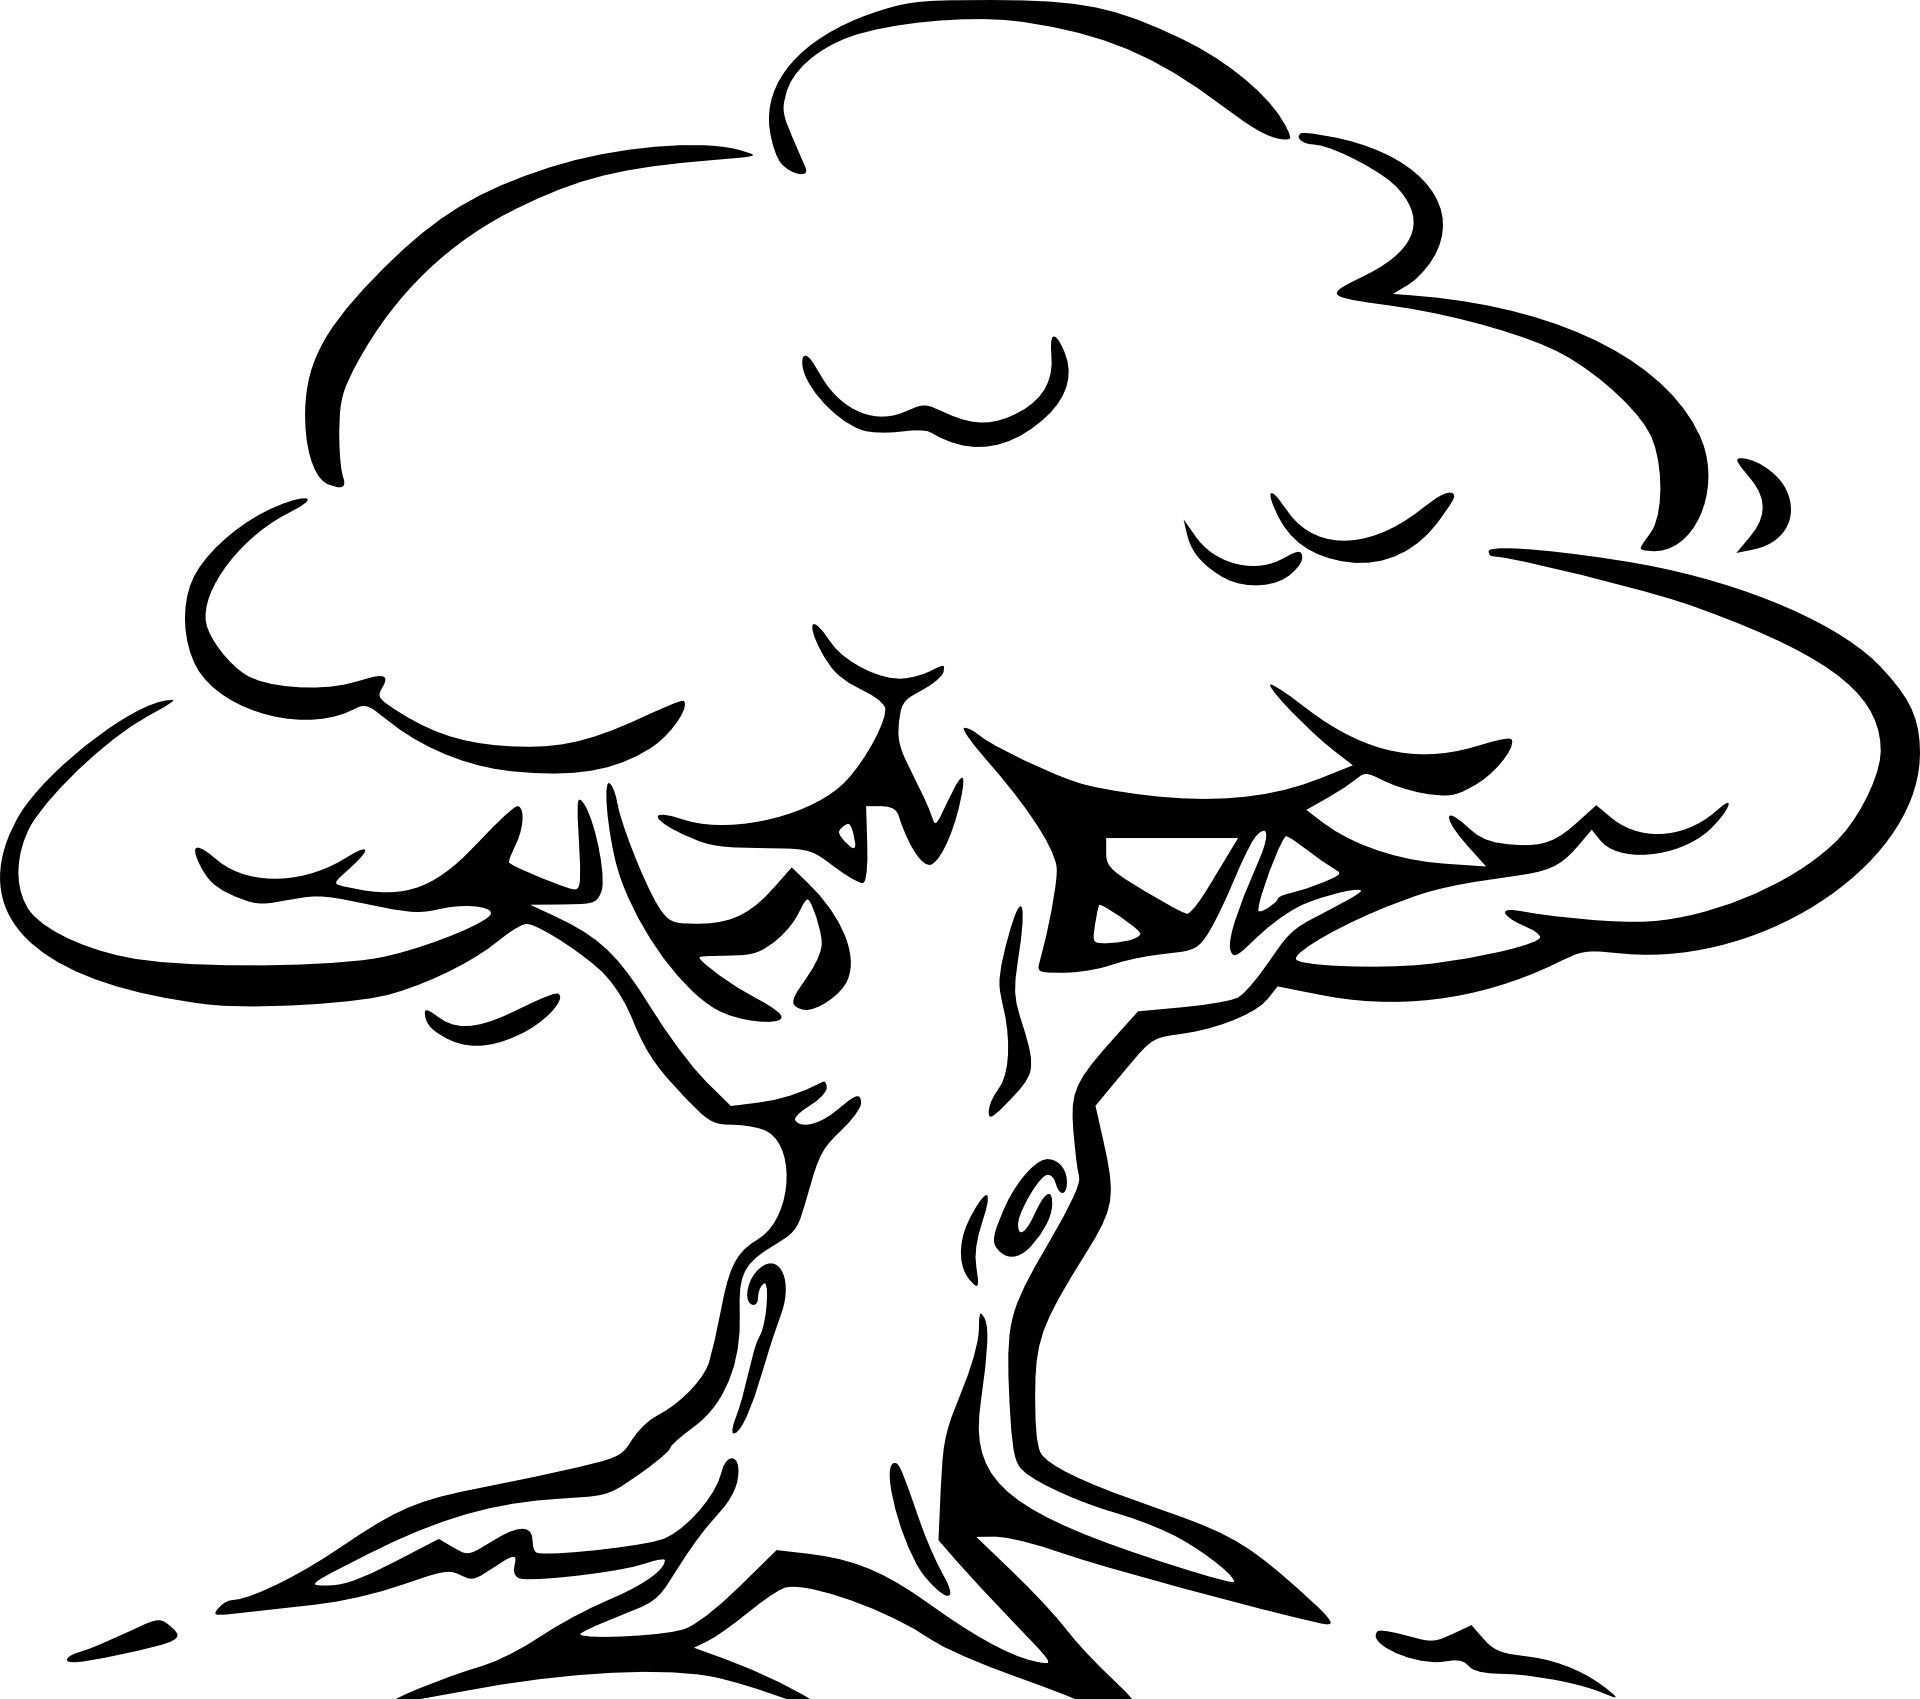 Malvorlagen Baum Ohne Blatter In 2020 Malvorlagen Baum Zeichnung Ausmalbilder